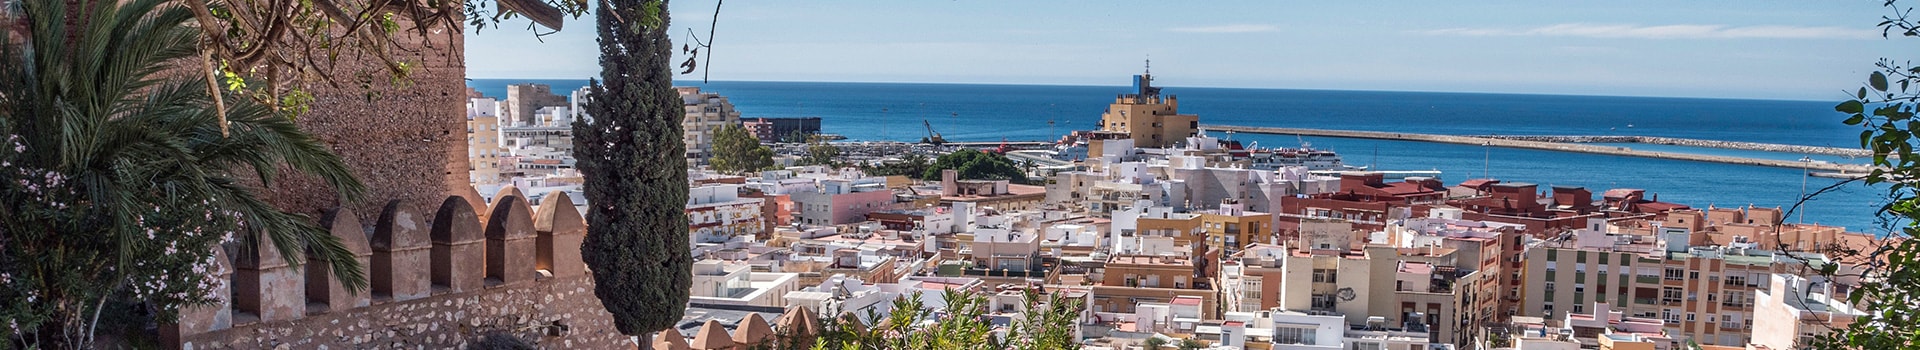 Ibiza - Almeria